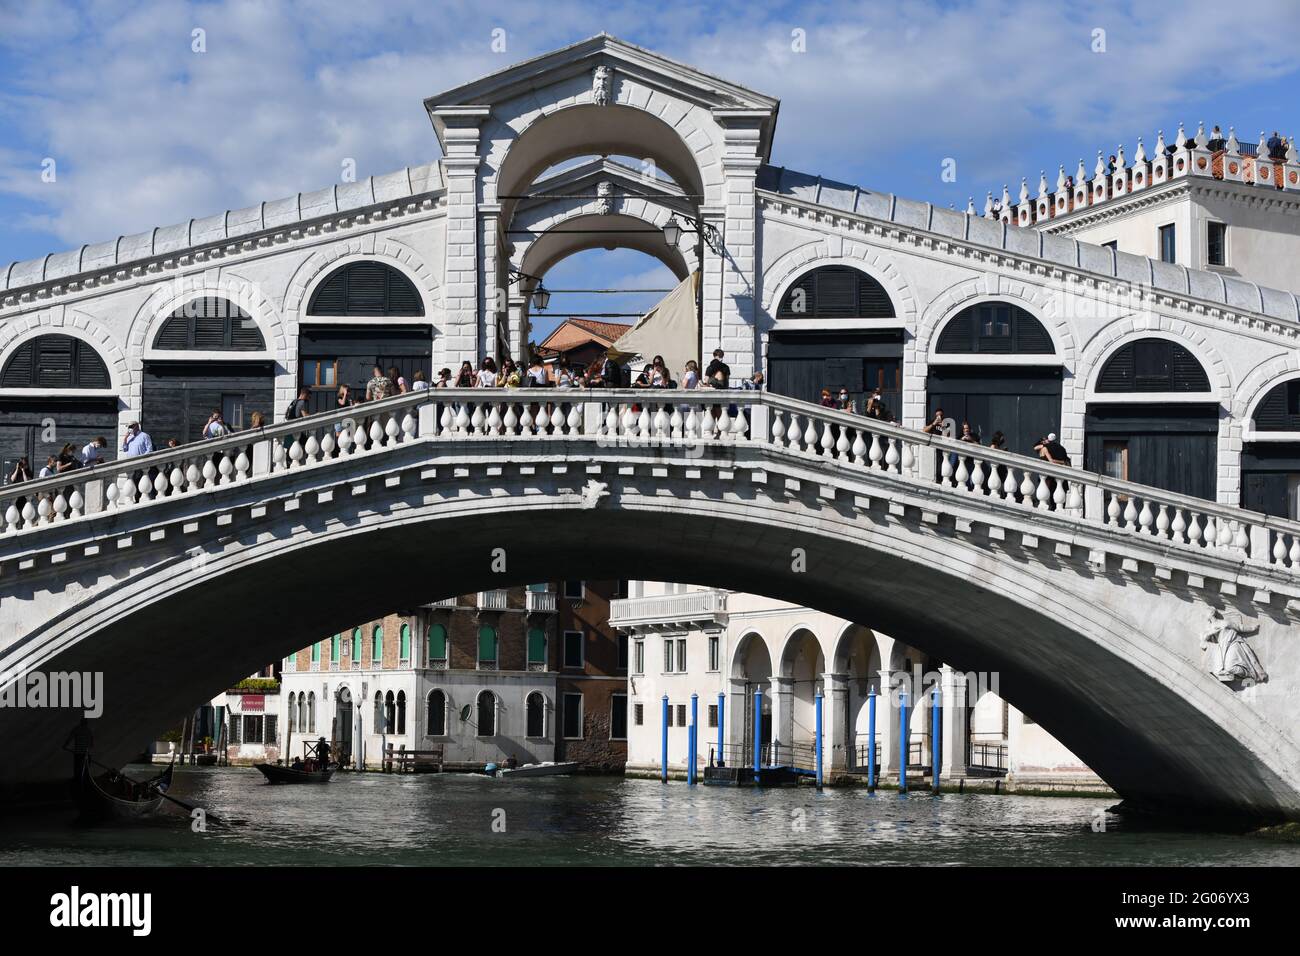 Rialtobrücke, eine der bekanntesten Sehenswürdigkeiten Veneigs, mit ersten Touristen nach Grenzöffnung zu Italien nach dem Covid bedingten Lock down Banque D'Images